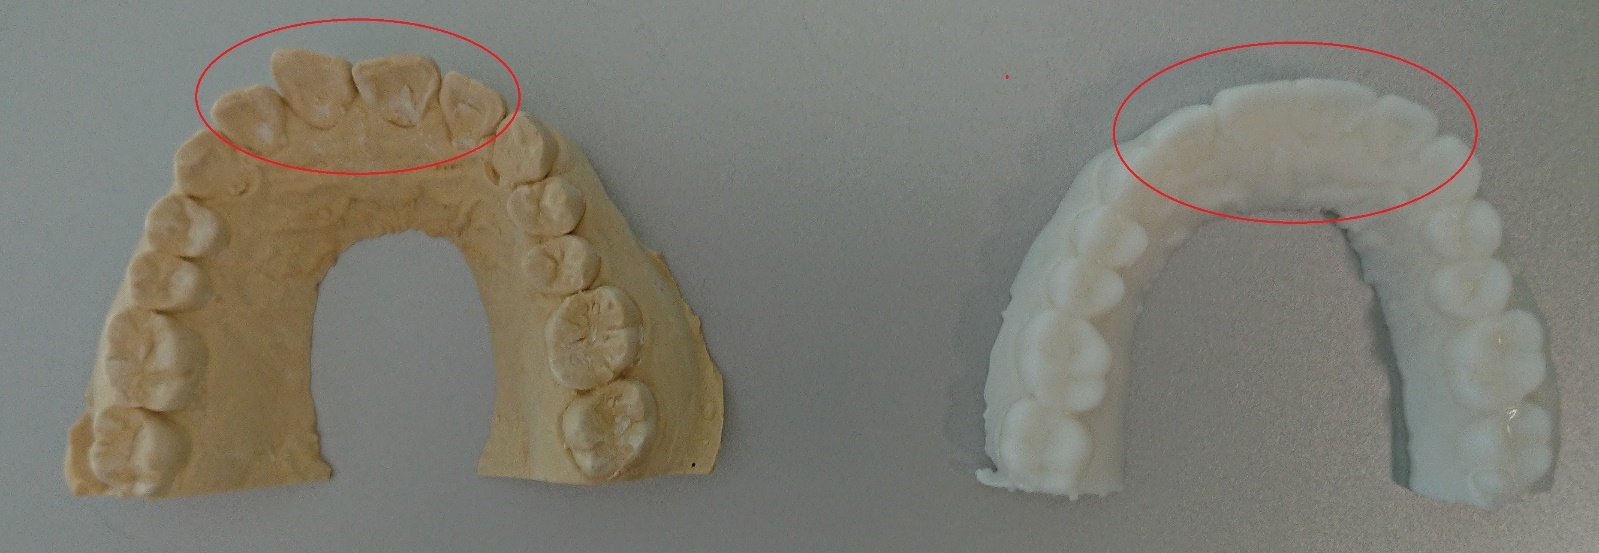 歯型をスキャナーで3Dデータ化したイメージ画